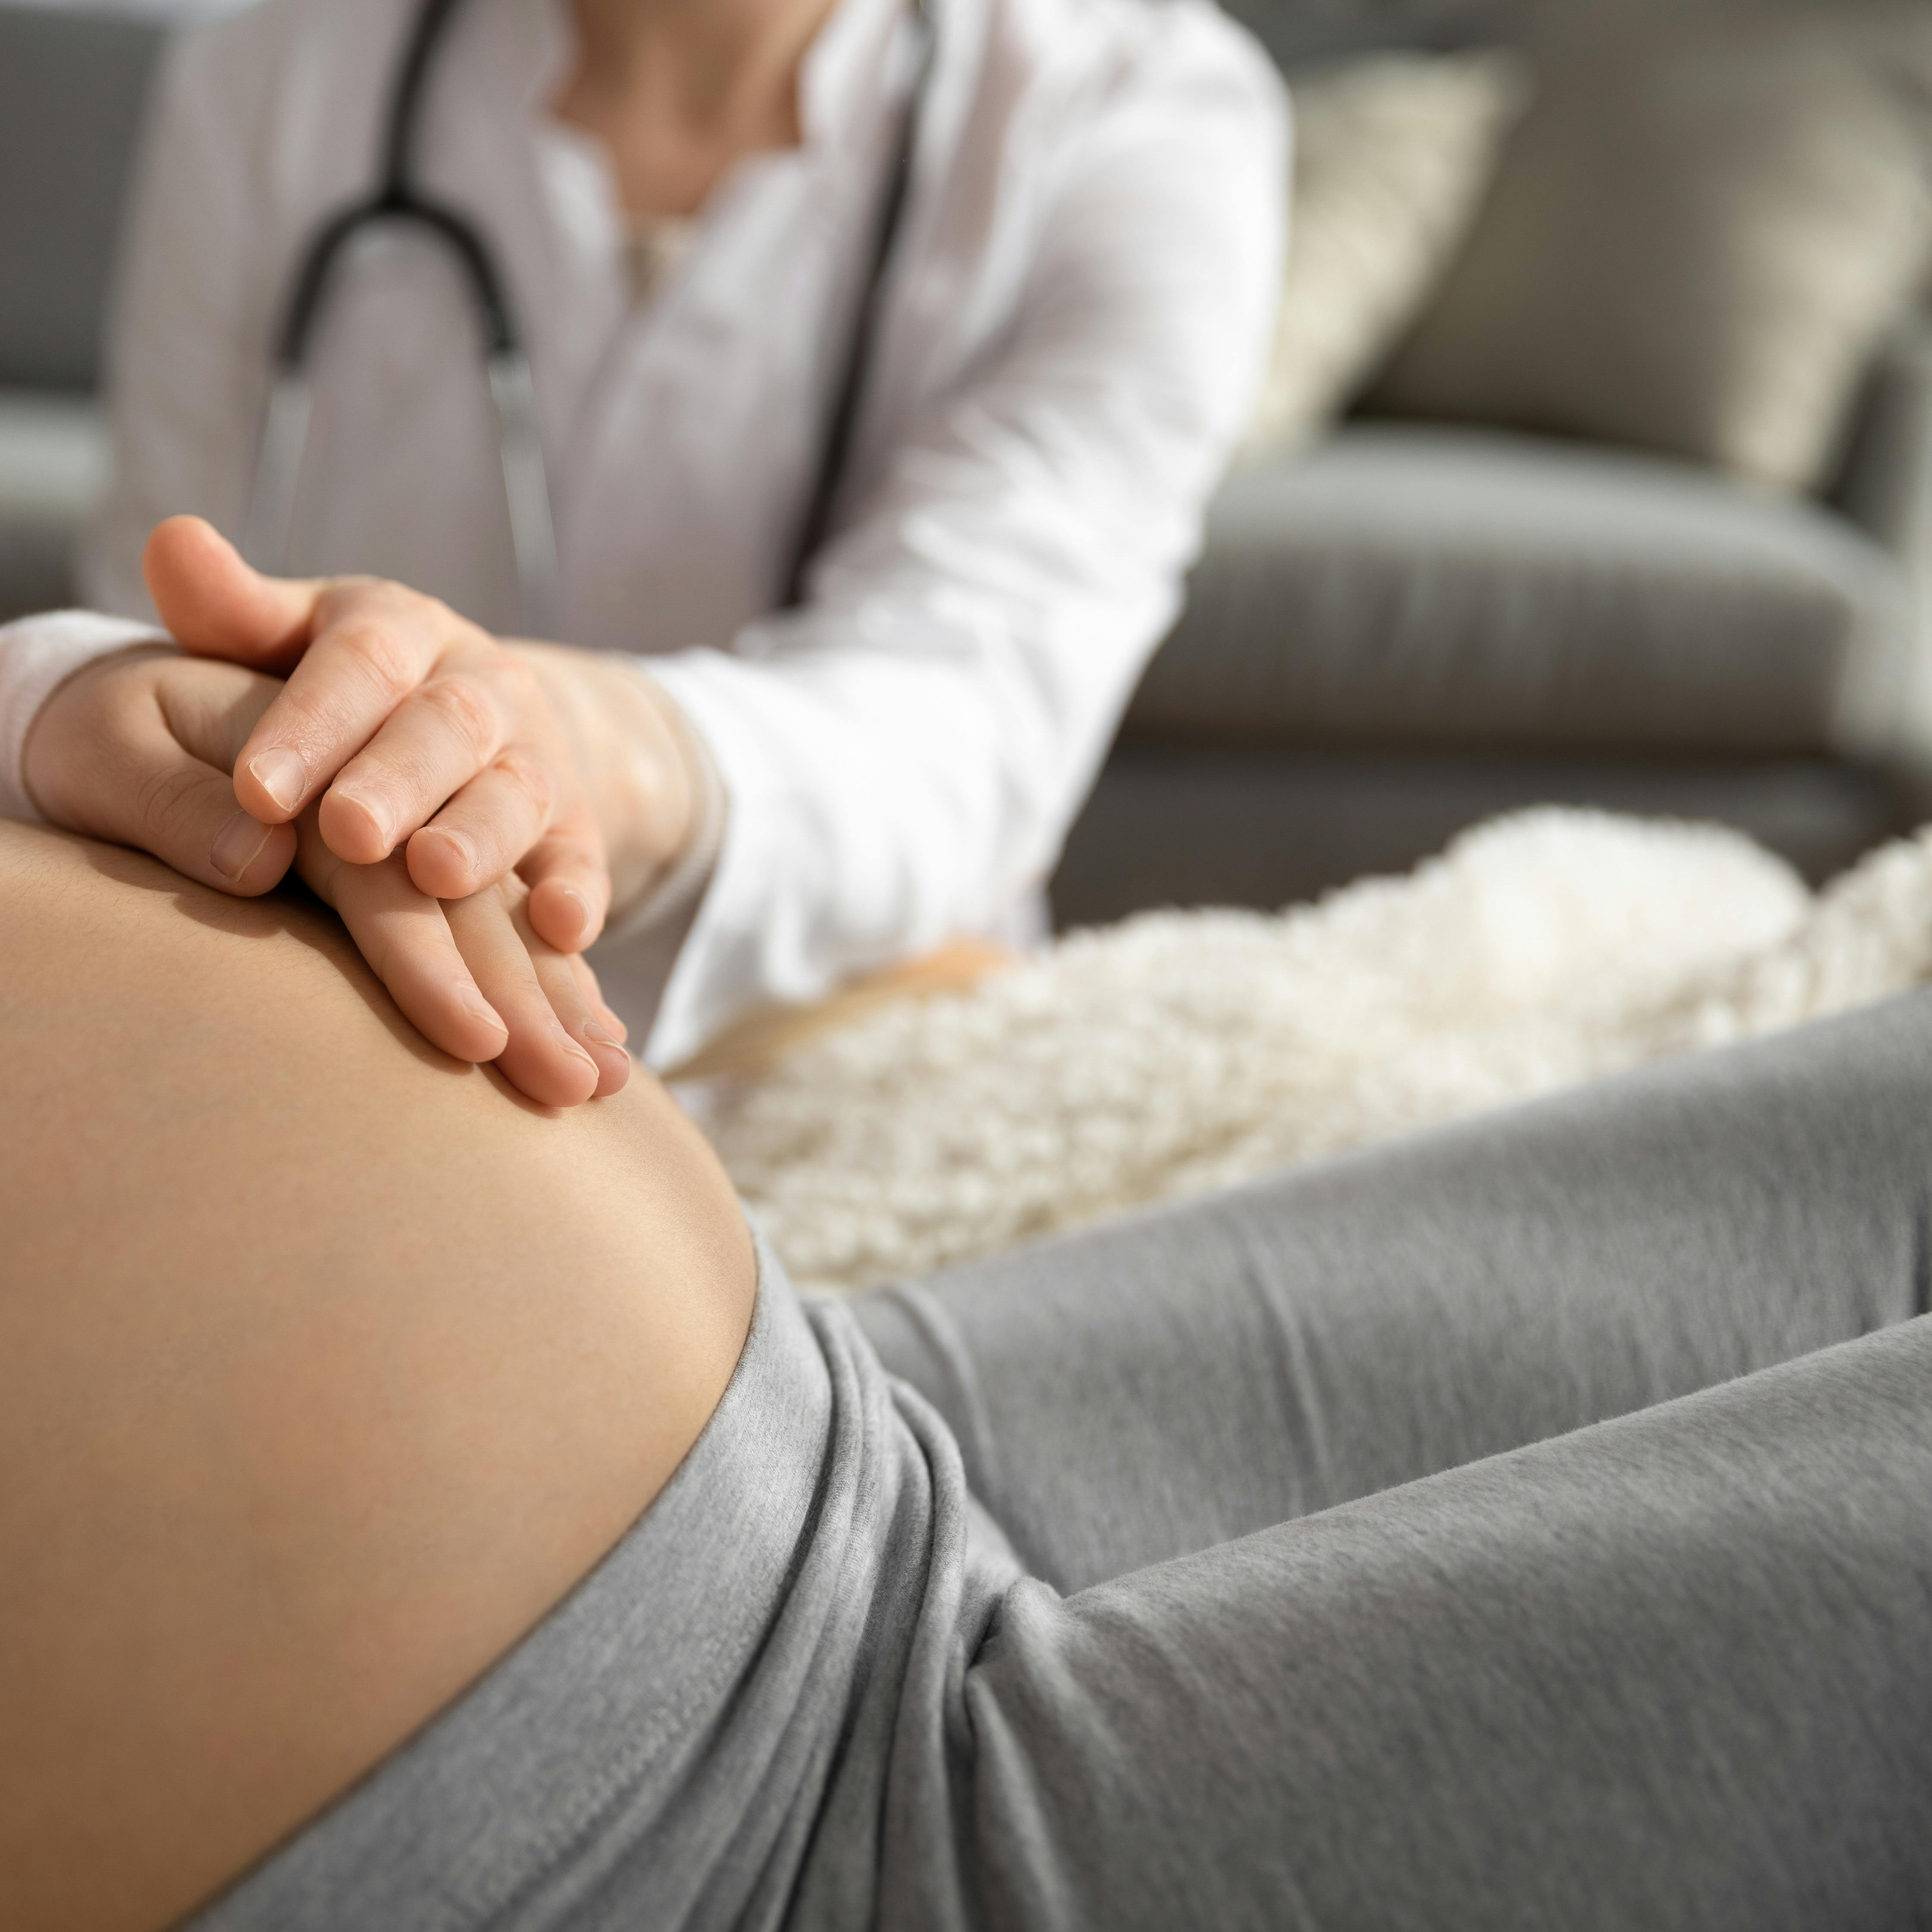 En gravid kvinde, der tidligere har født med kejsersnit